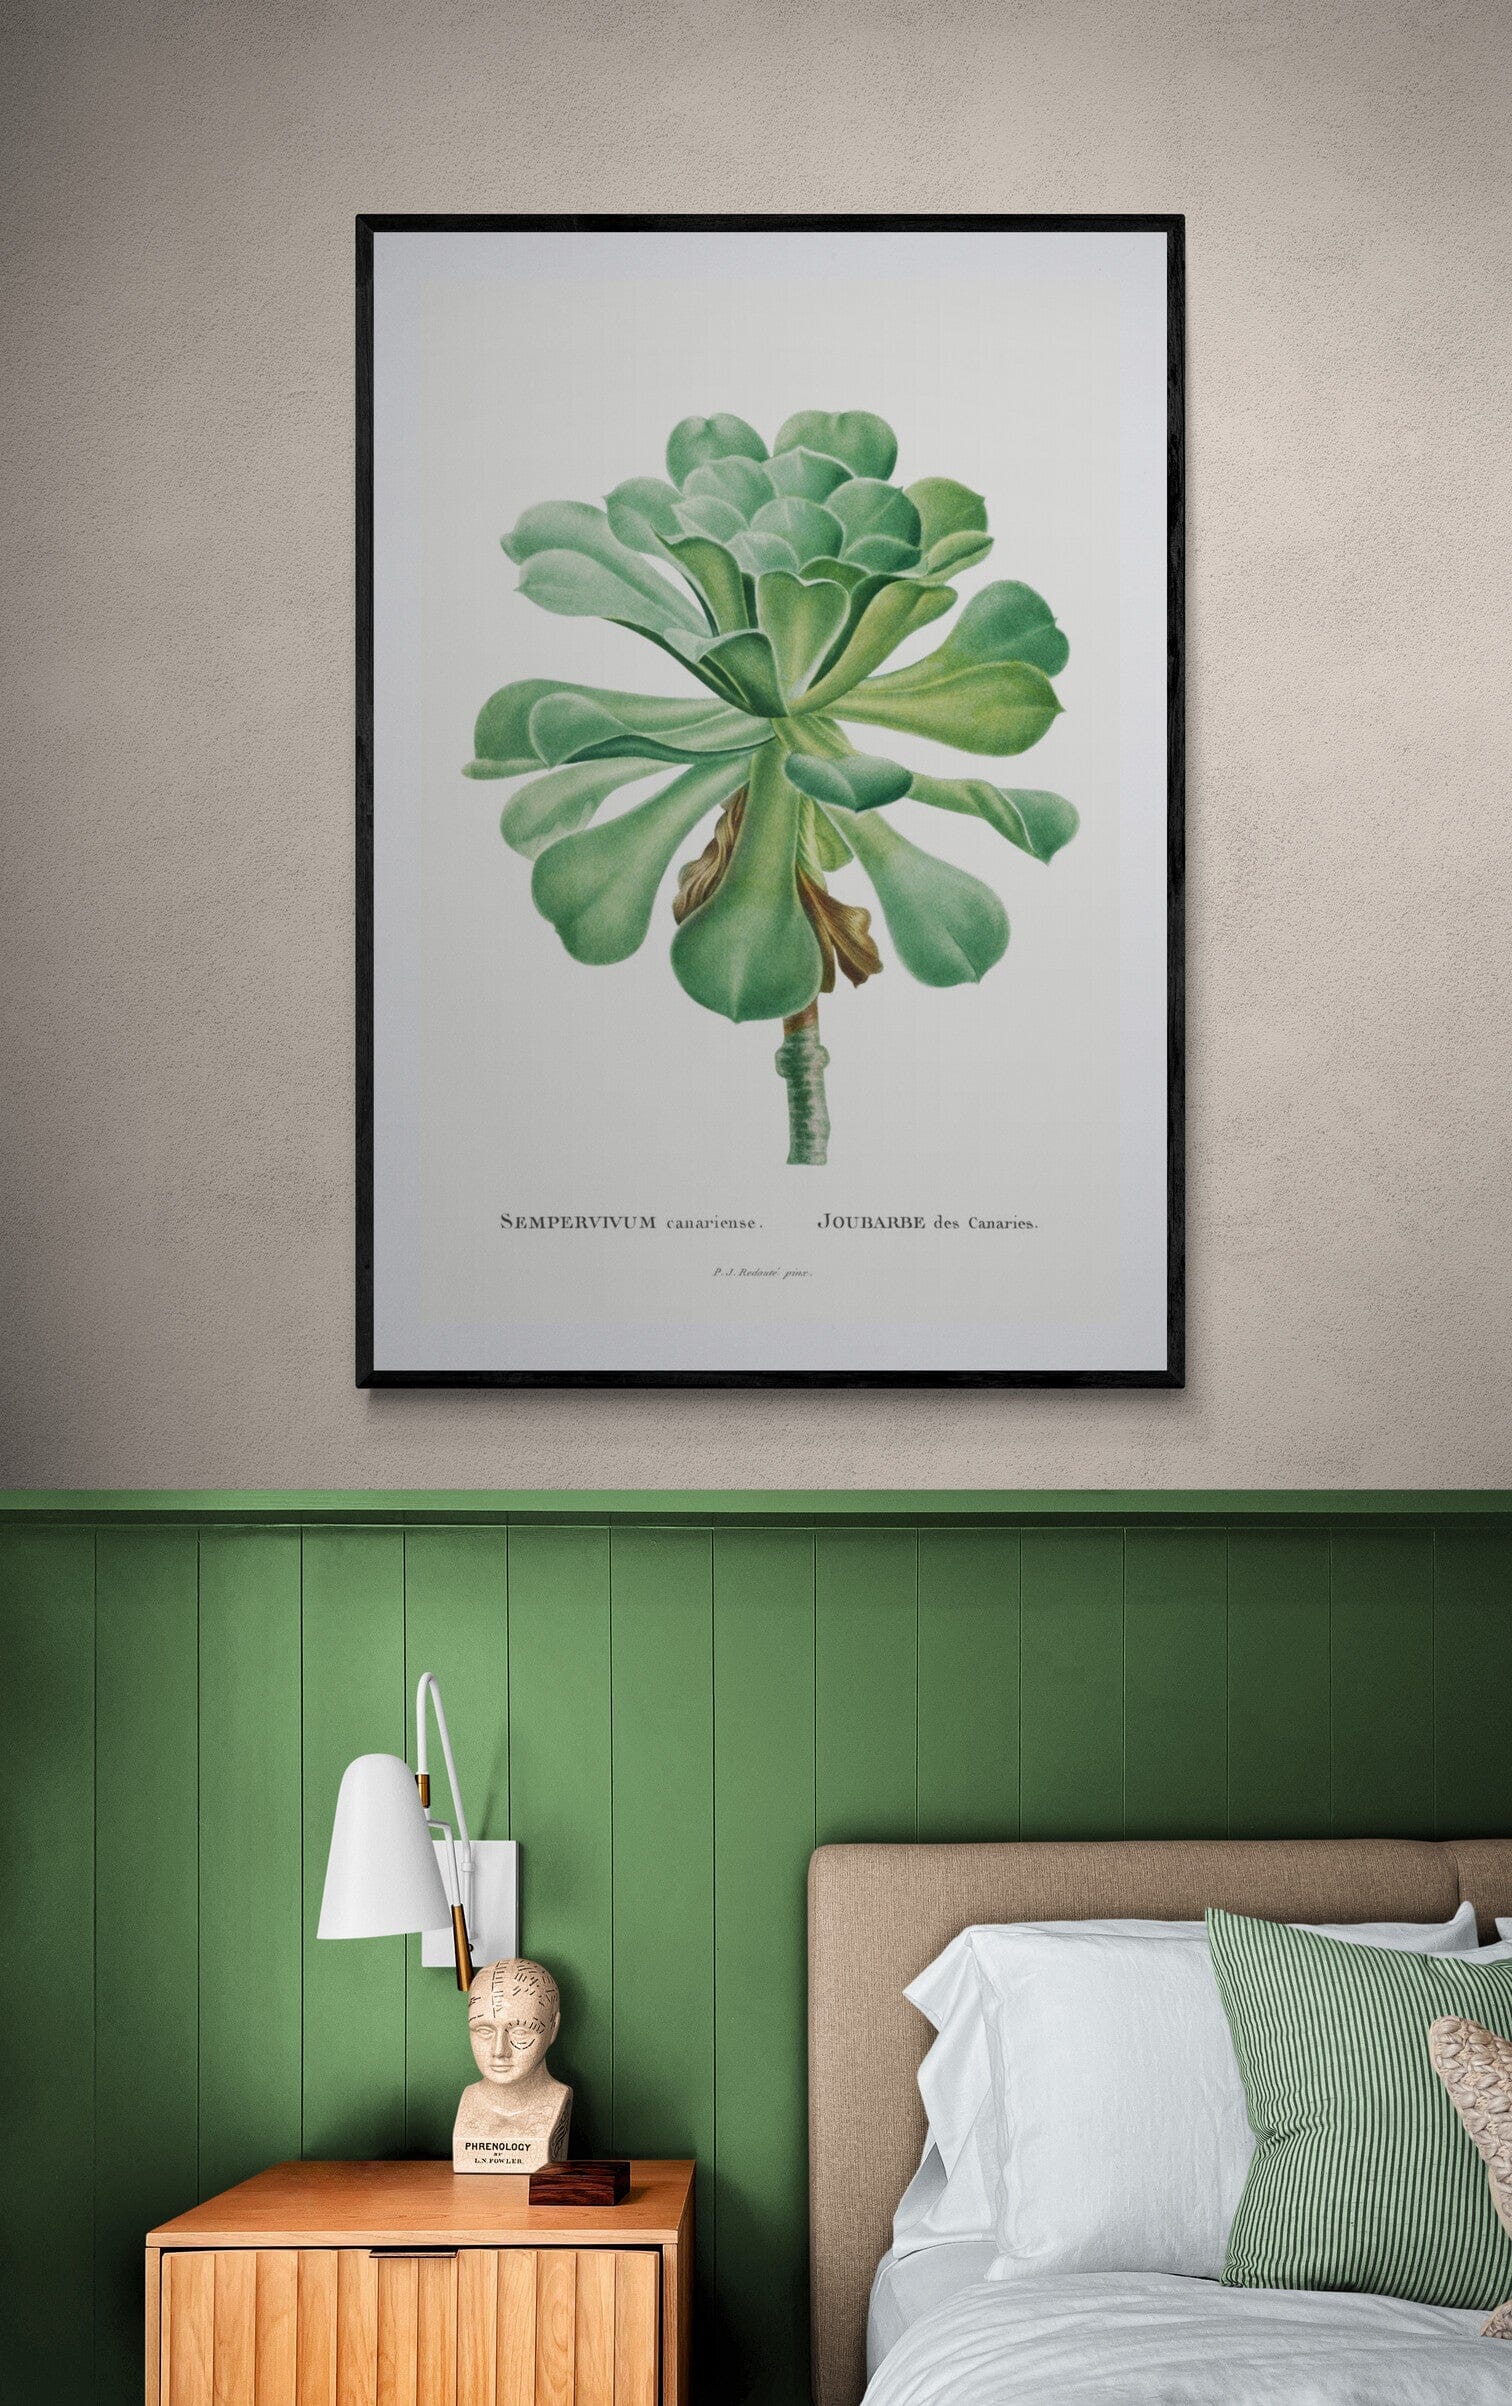 Sempervivum botanical print (1799) | Sage green bedroom | Pierre-Joseph Redouté Posters, Prints, & Visual Artwork The Trumpet Shop   